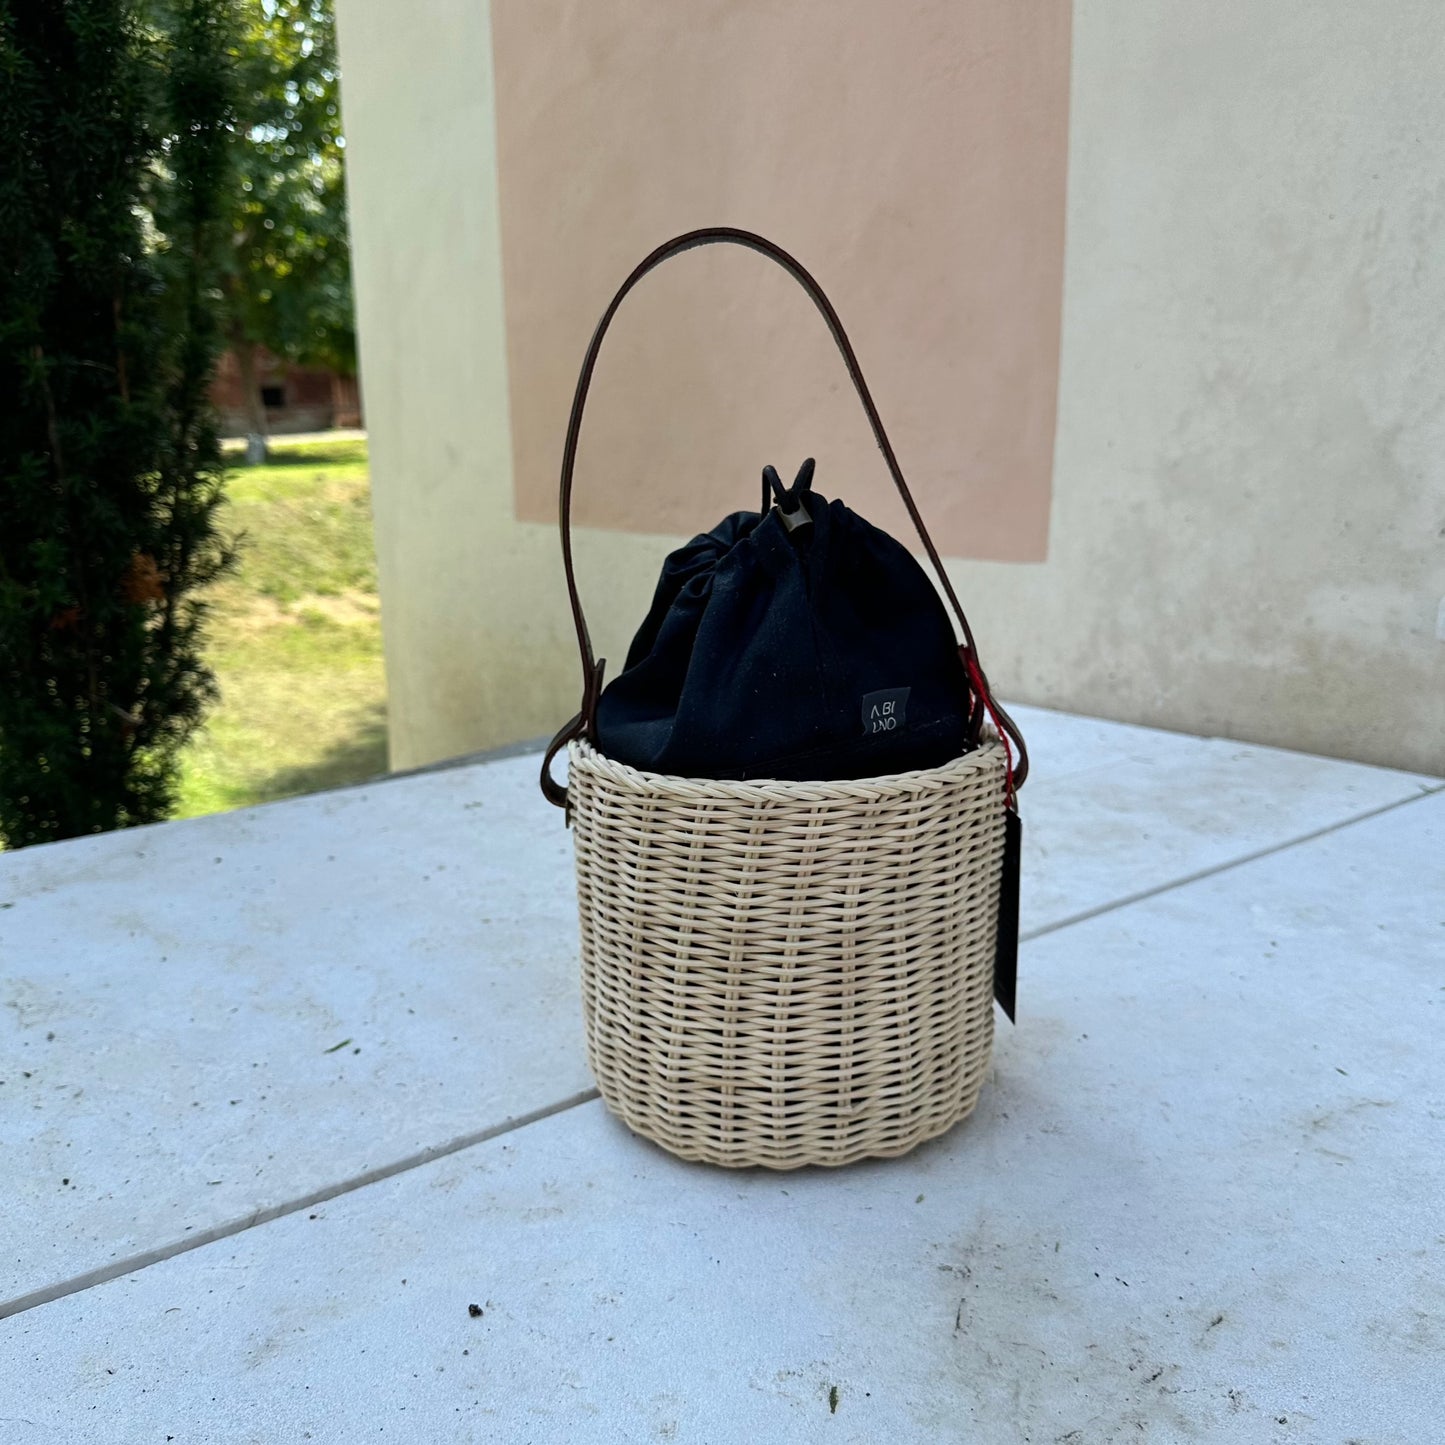 Abiuno - Basket Small Black